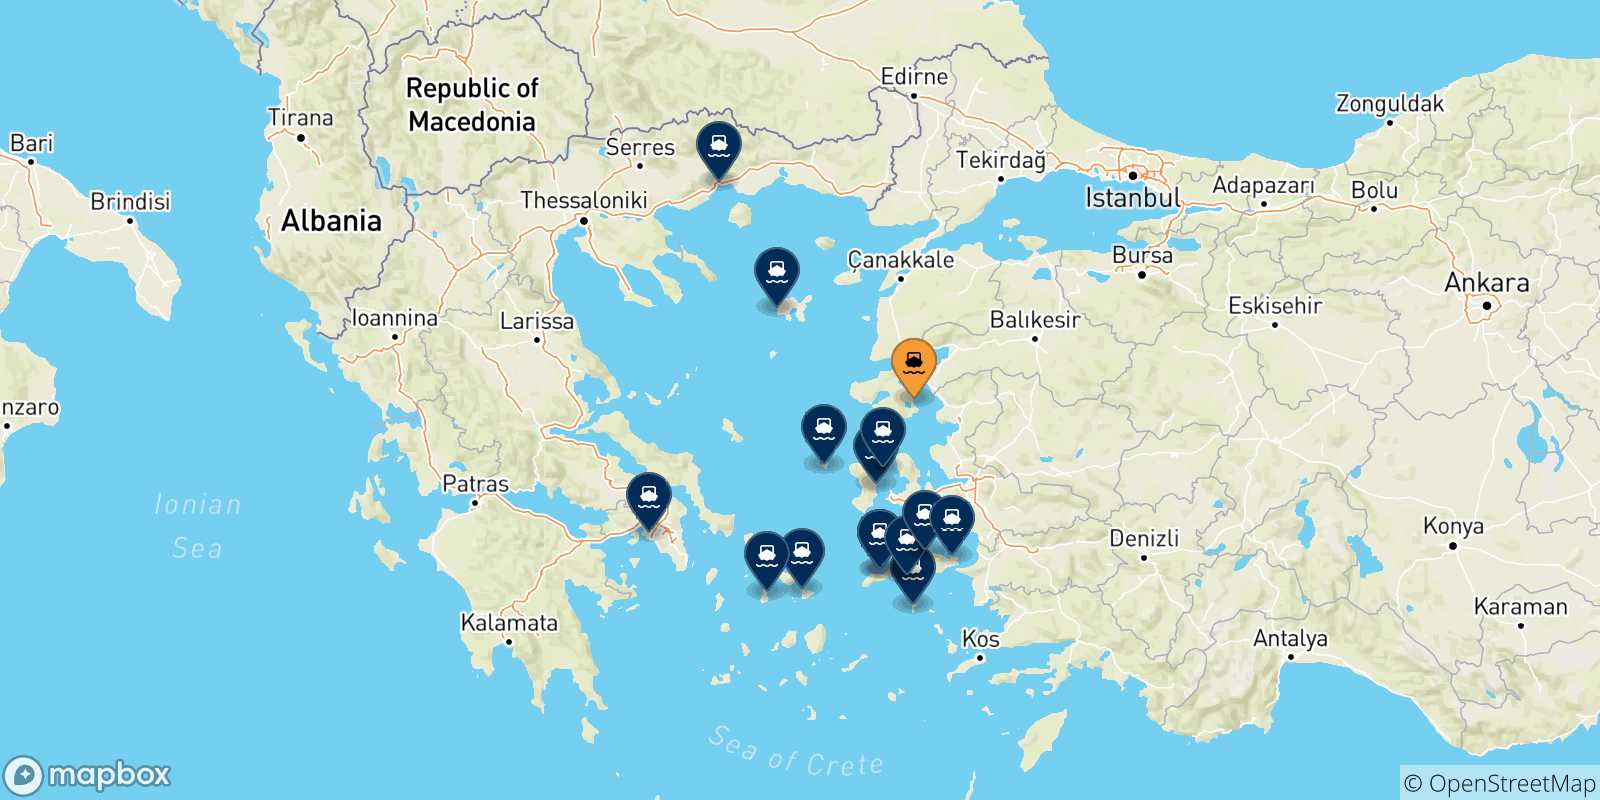 Mappa delle possibili rotte tra Mitilini (Lesvos) e la Grecia